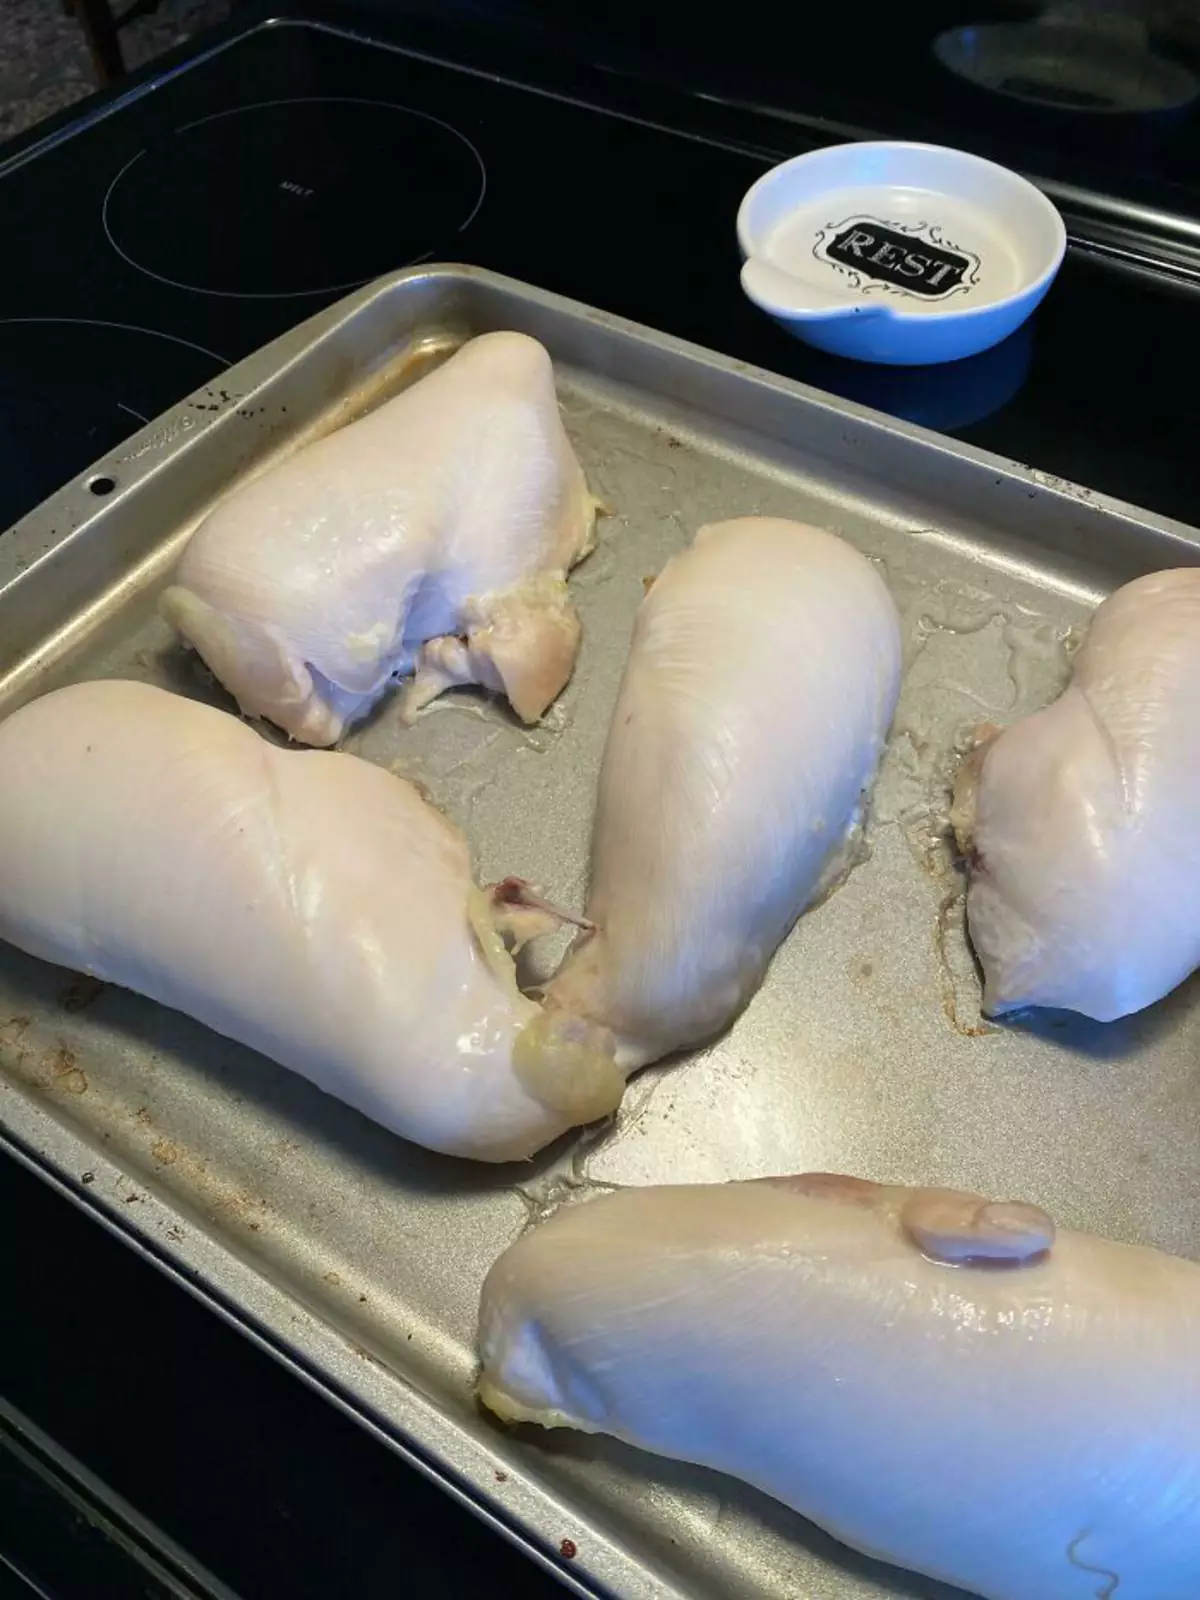 “Так в доме моей соседки подают вареную курицу. Да-да, это уже вариант сервировки».